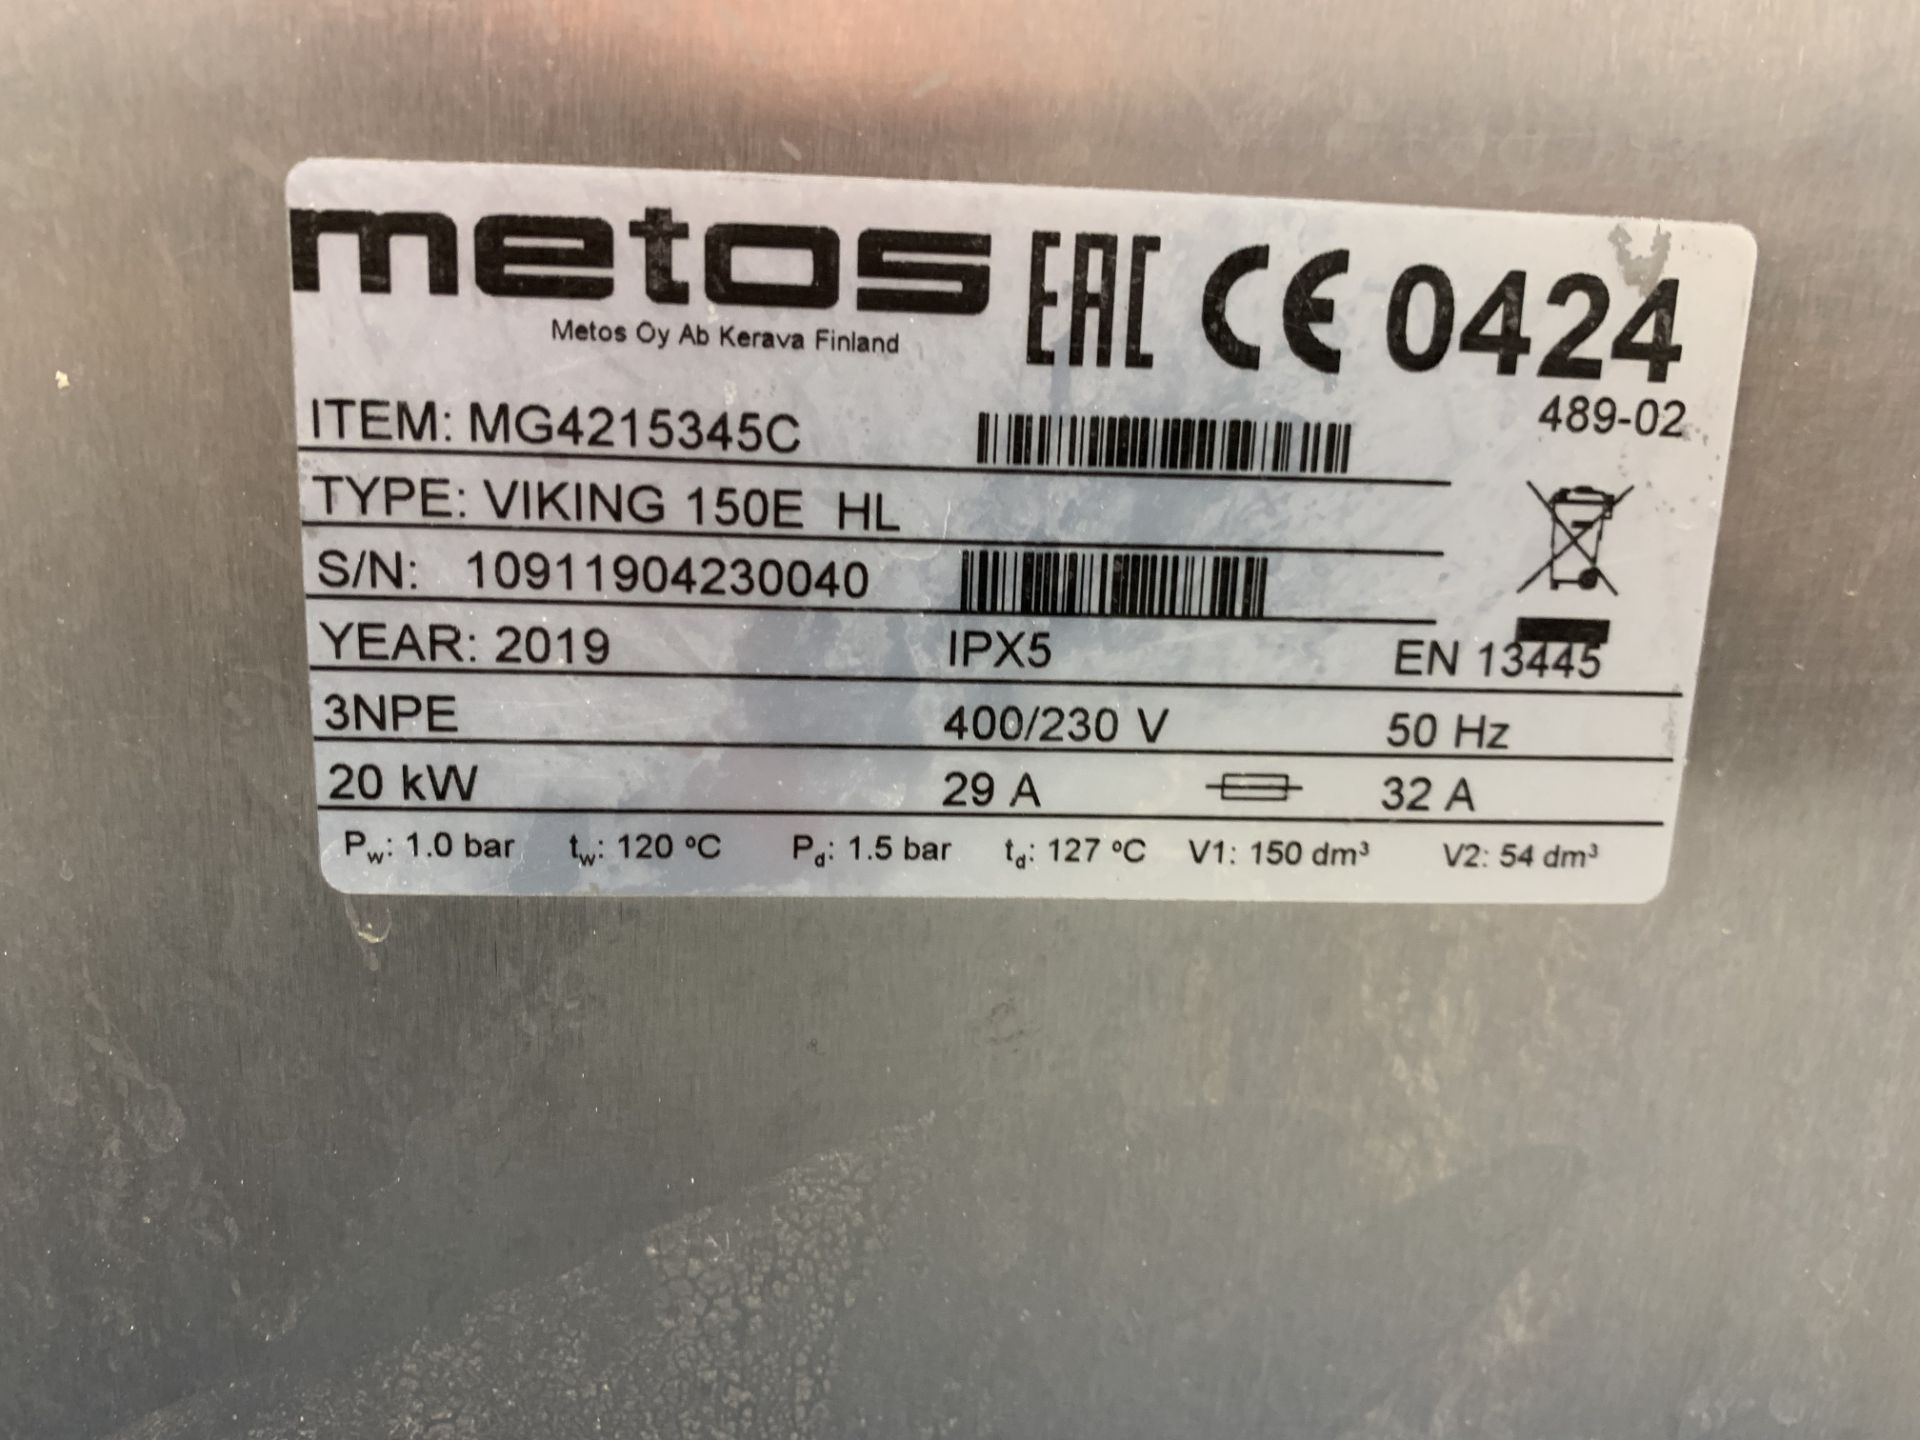 Metos Viking type 150E HL Kettle 2019 - Image 3 of 4